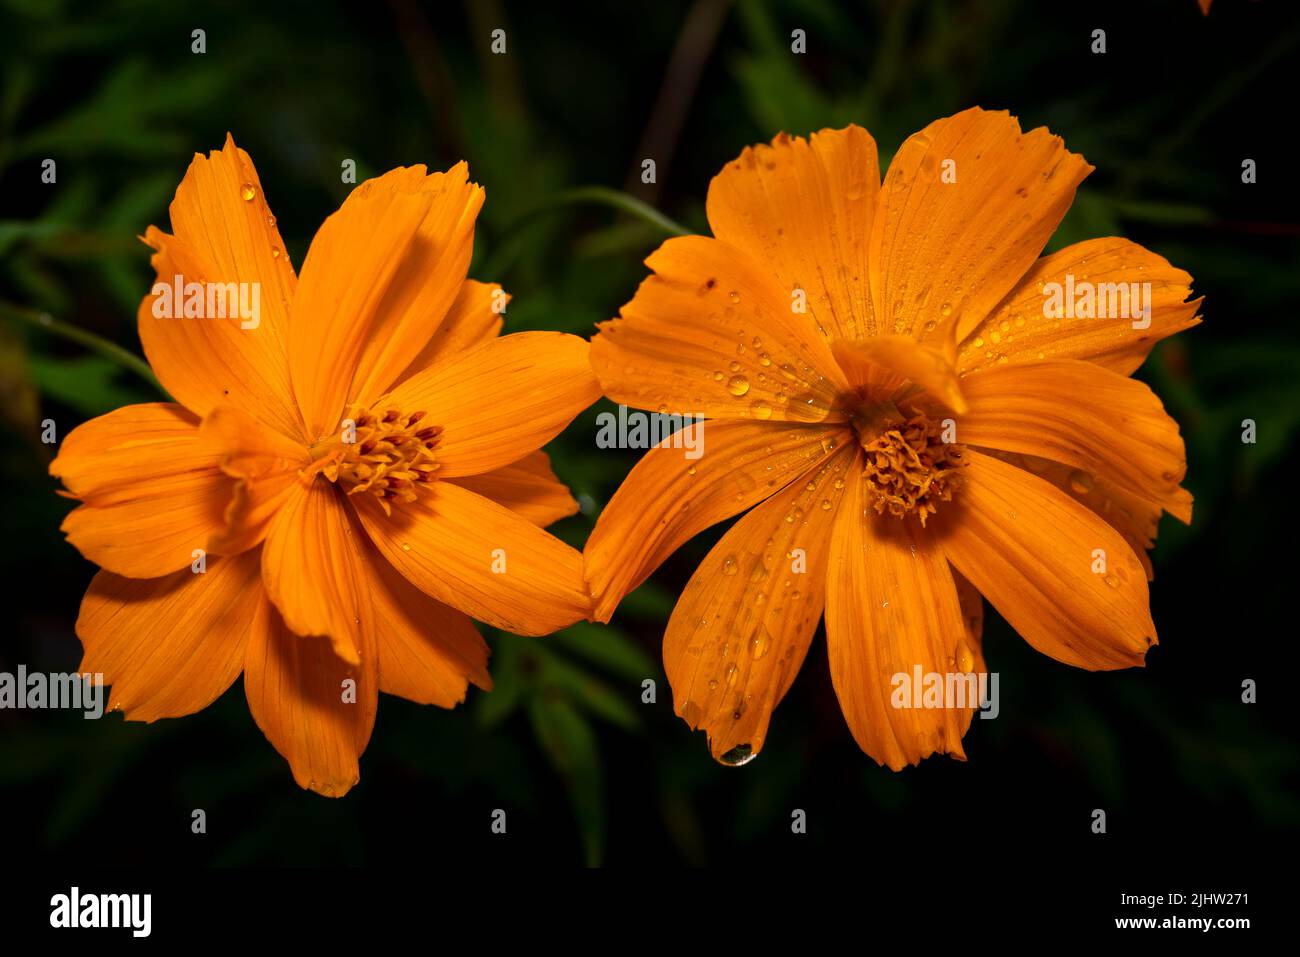 Foto a due bocce di fiori di marigold giallo Foto Stock